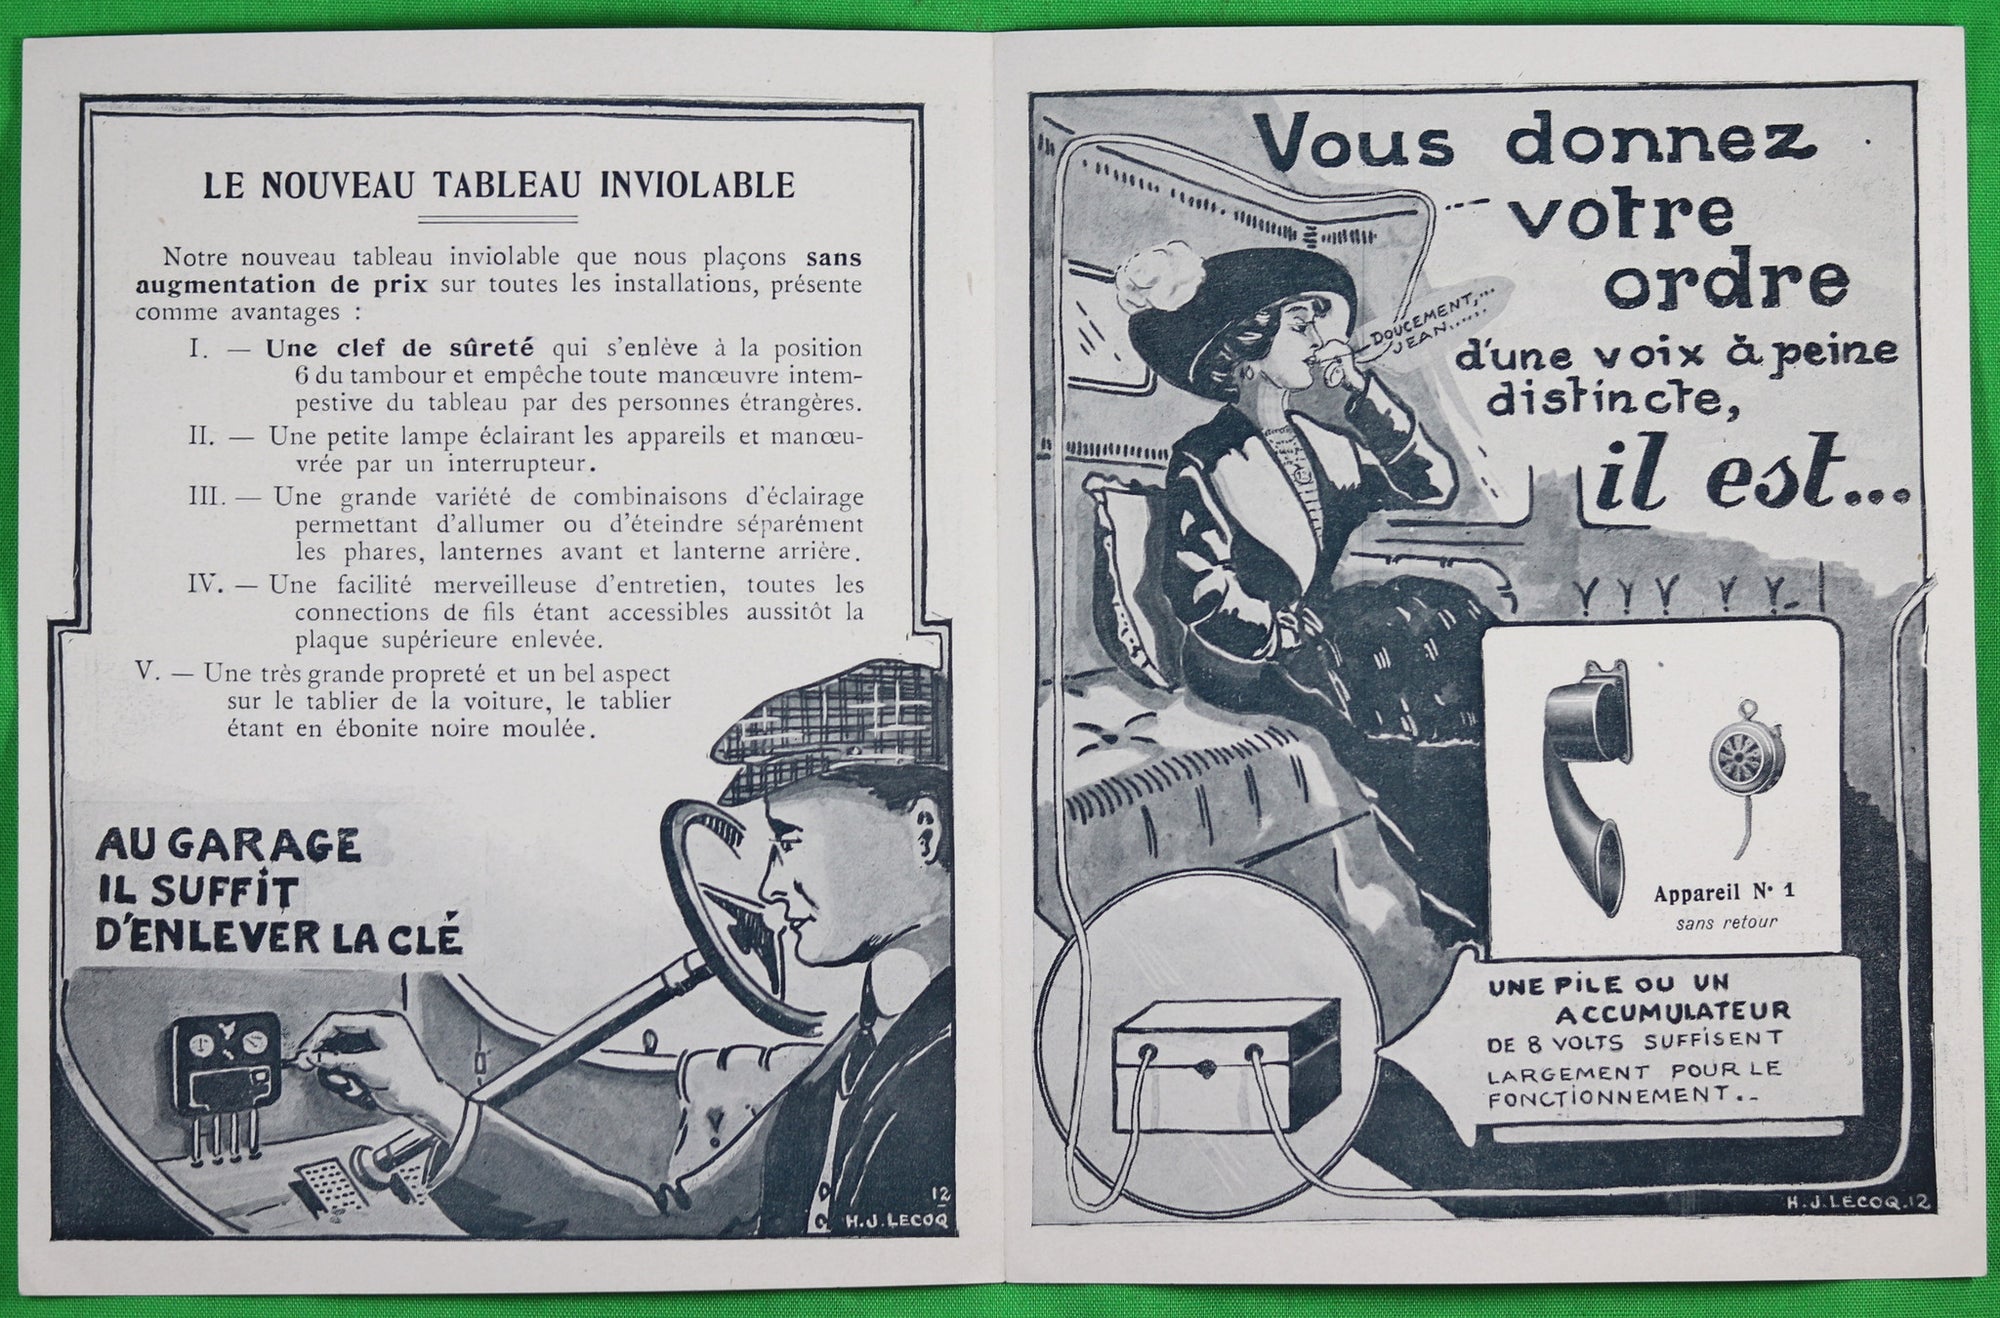 @1912 Pamphlet publicitaire pour Phares Ducellier (Paris)